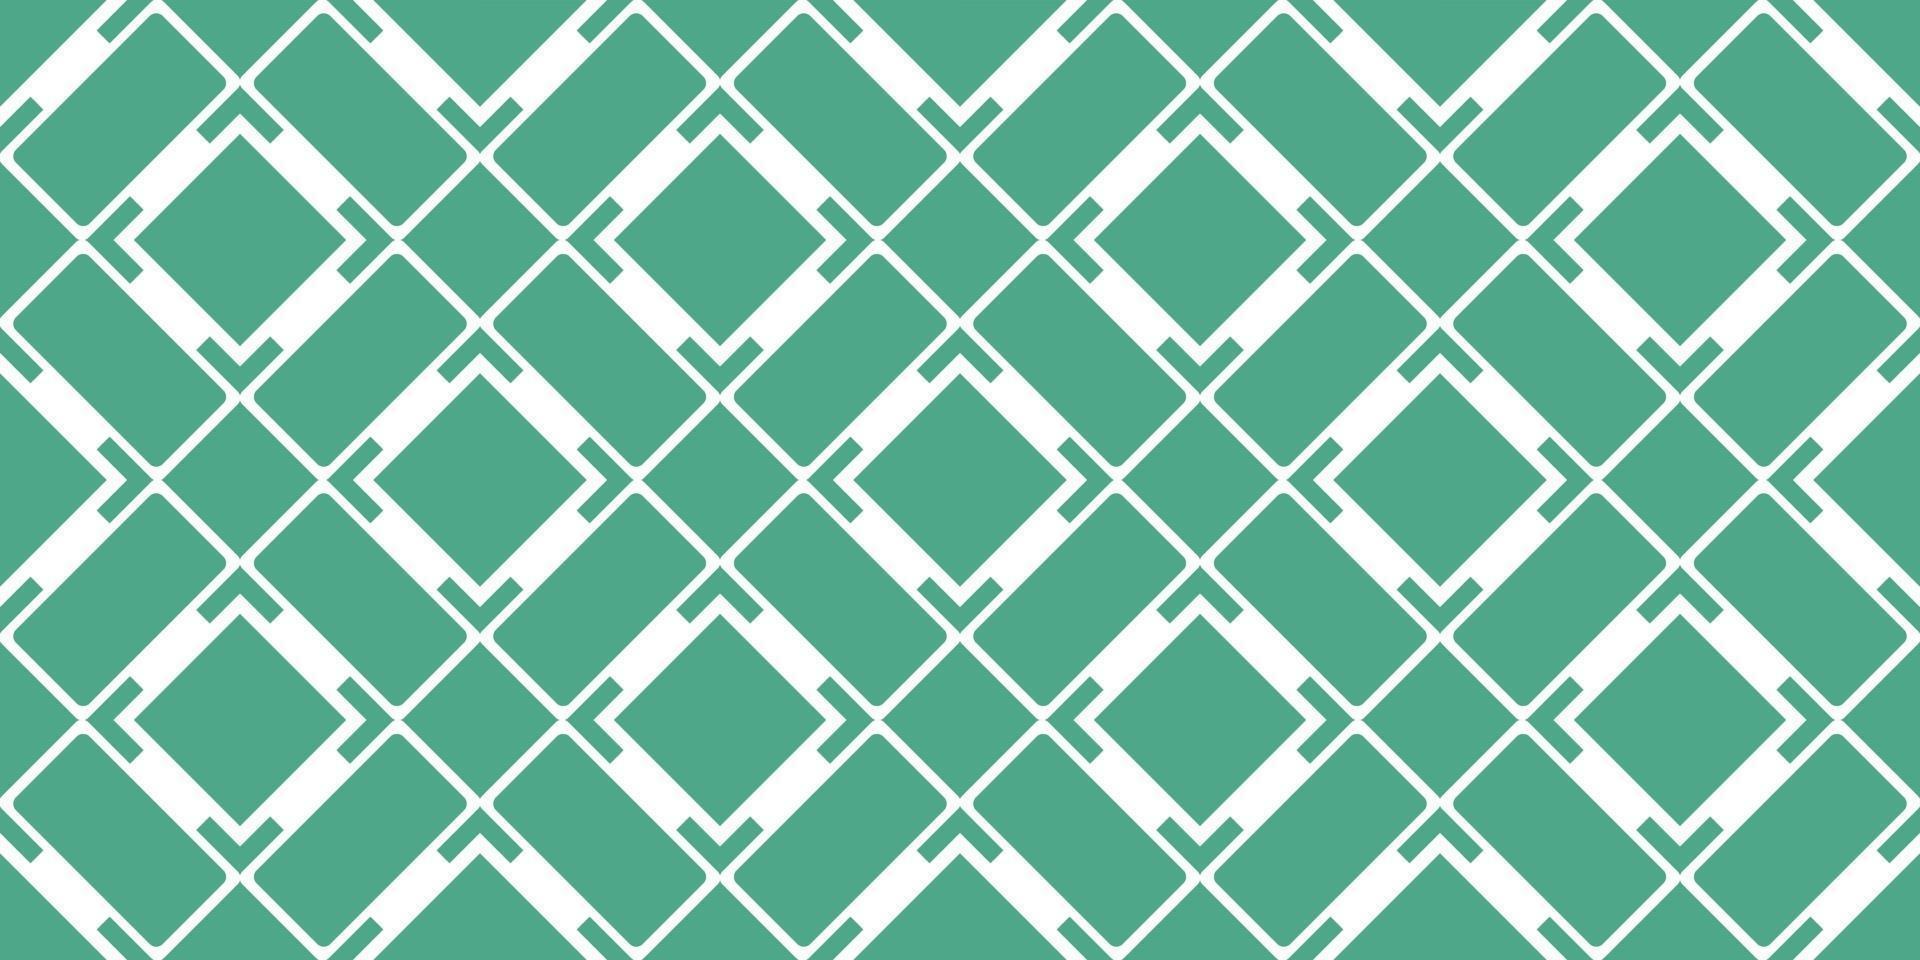 Arrière-plans géométriques à rayures transparentes vector illustration